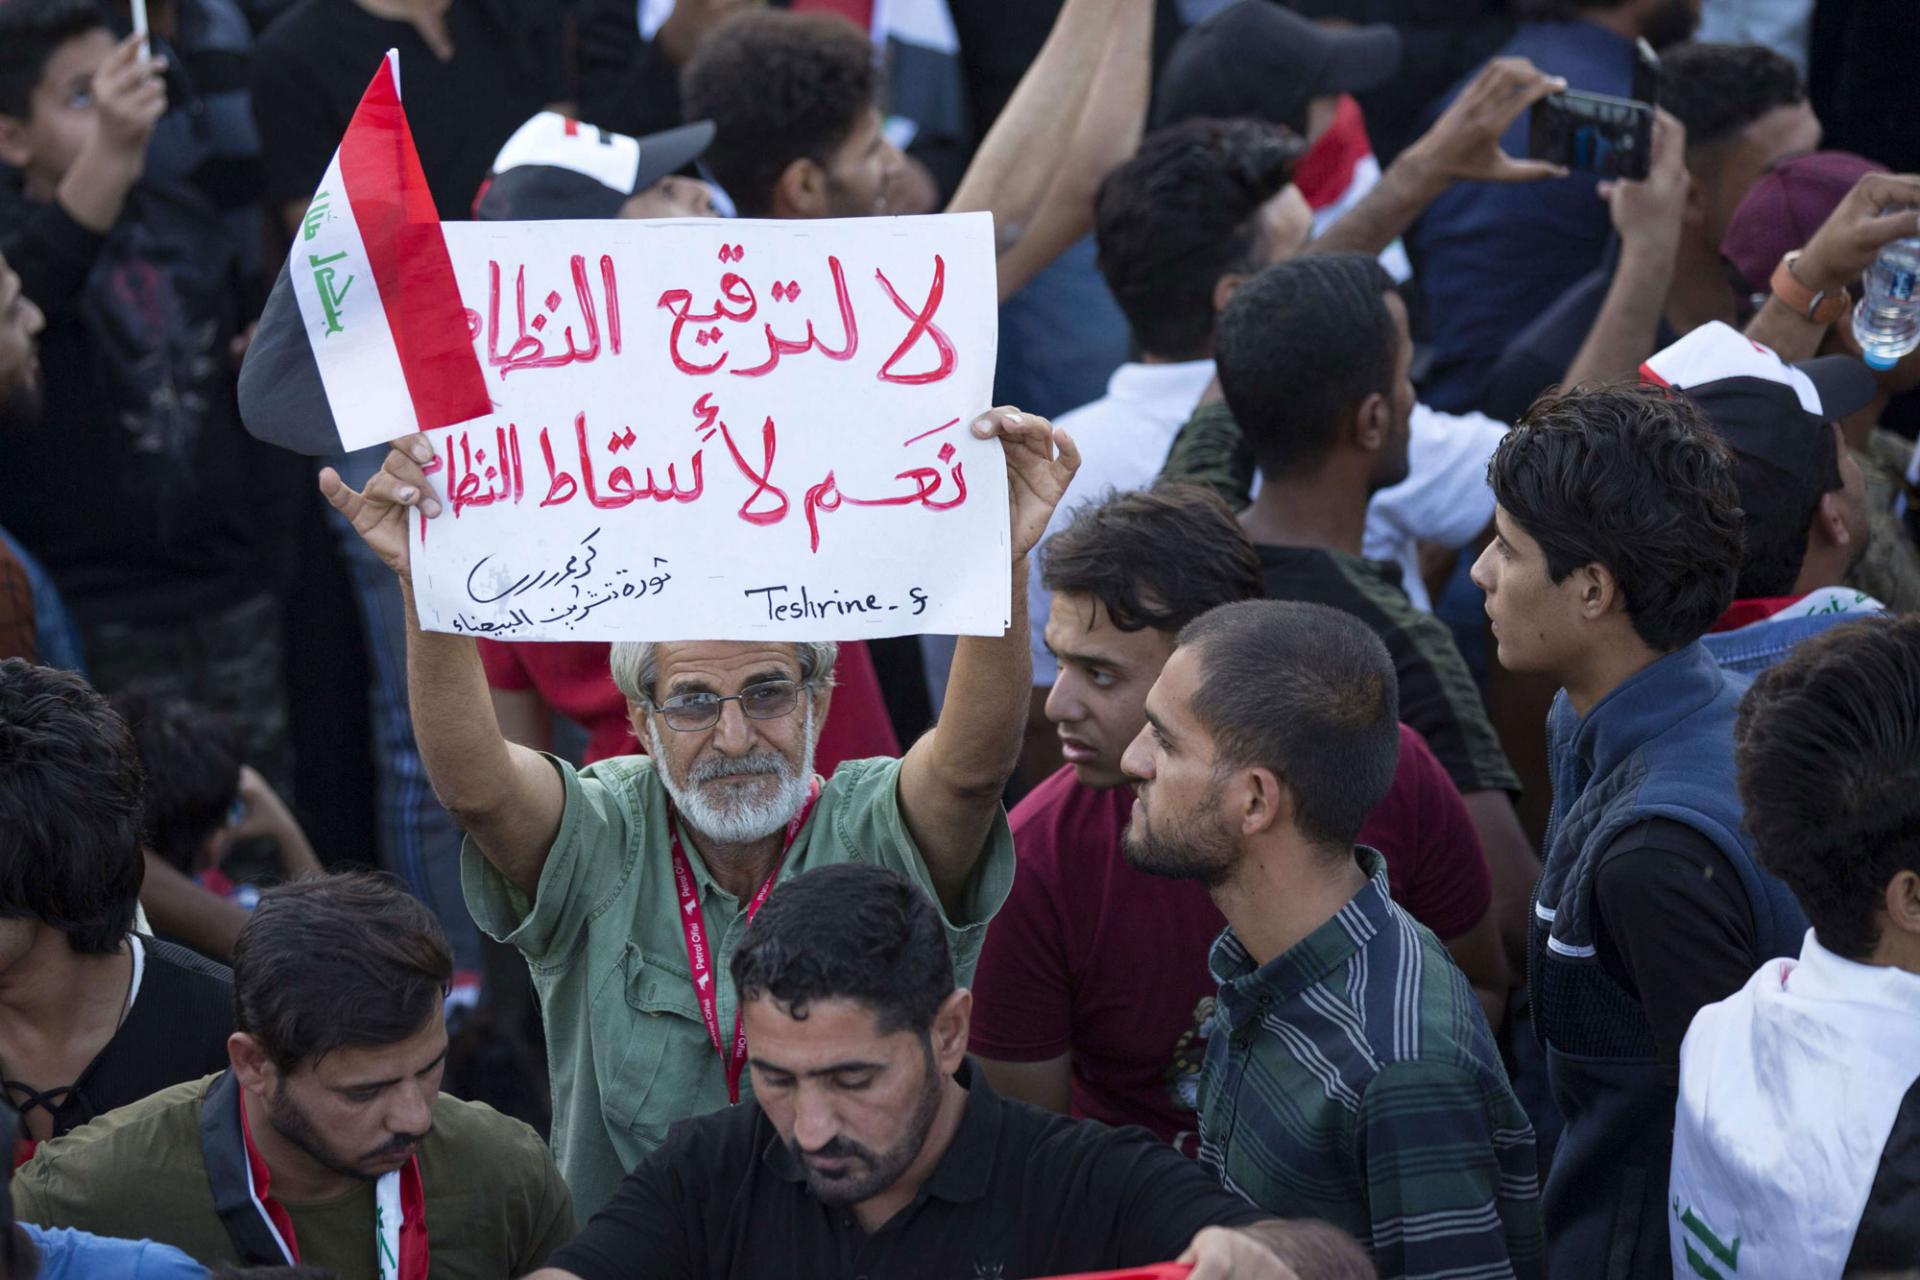 احتجاجات عابرة للطائفية في لبنان والعراق